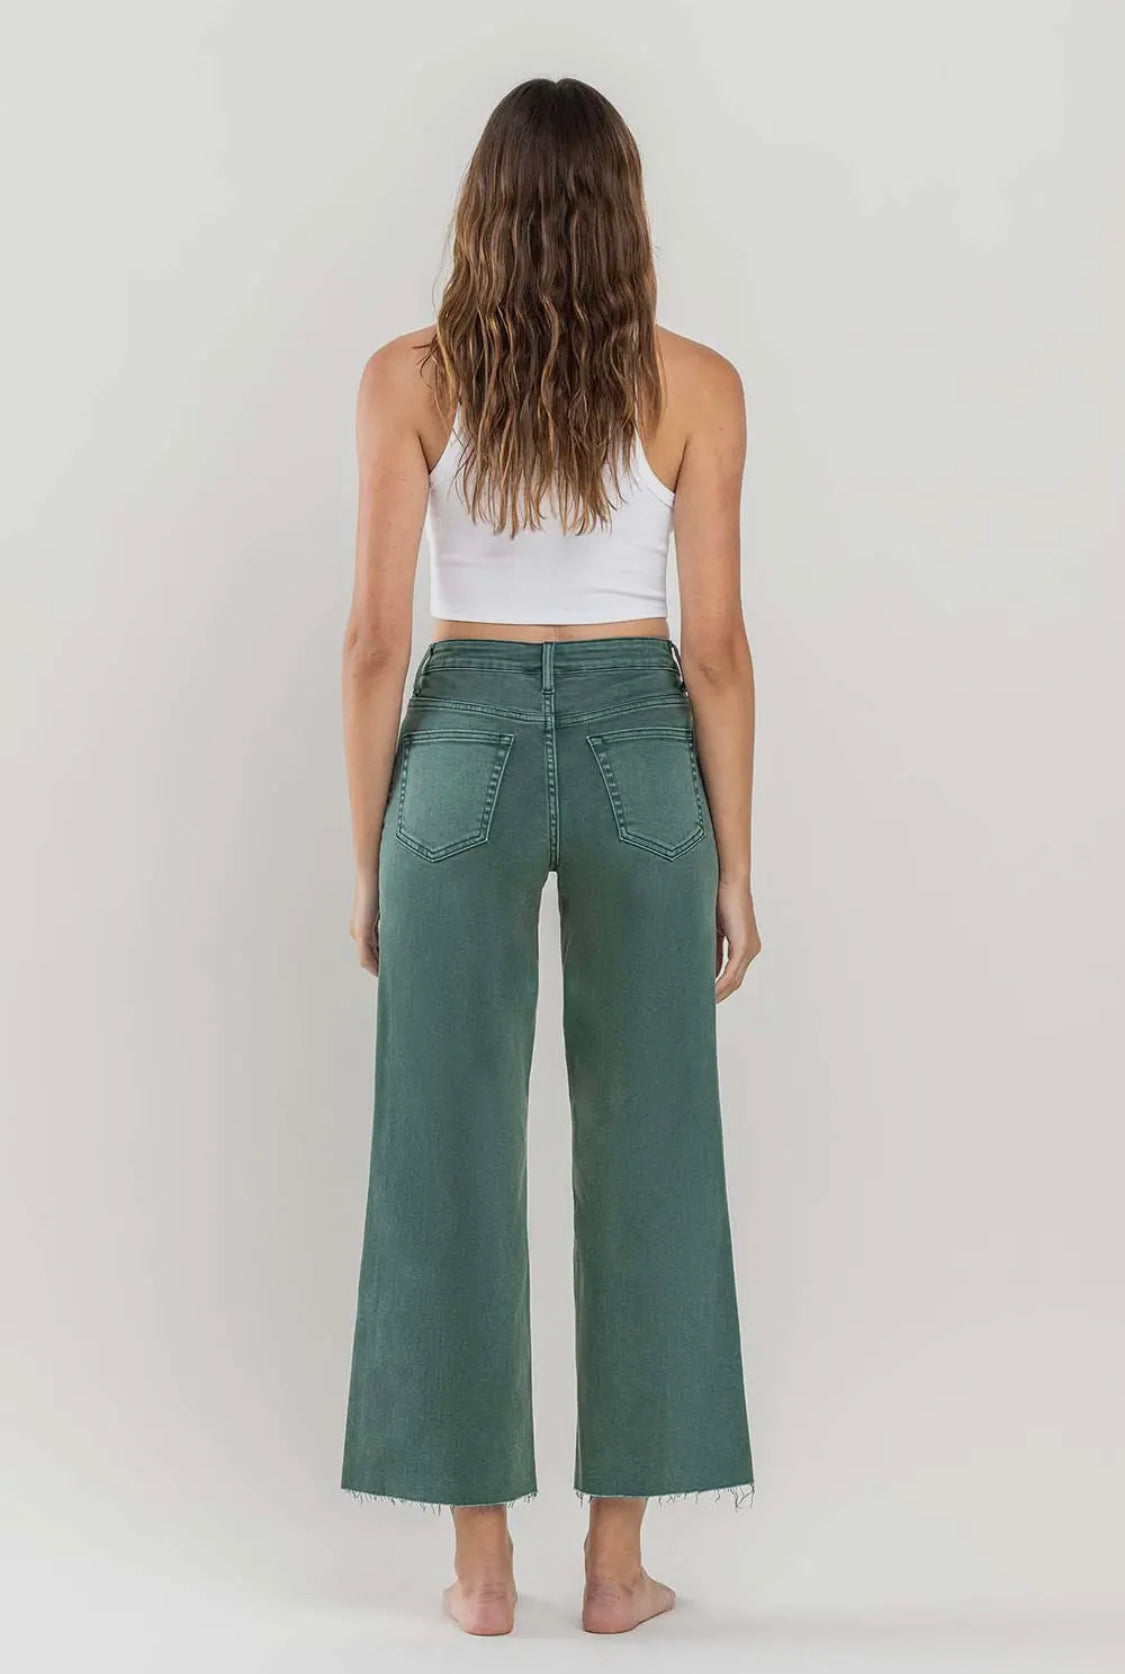 Sophia’s Jeans - Mallard Green